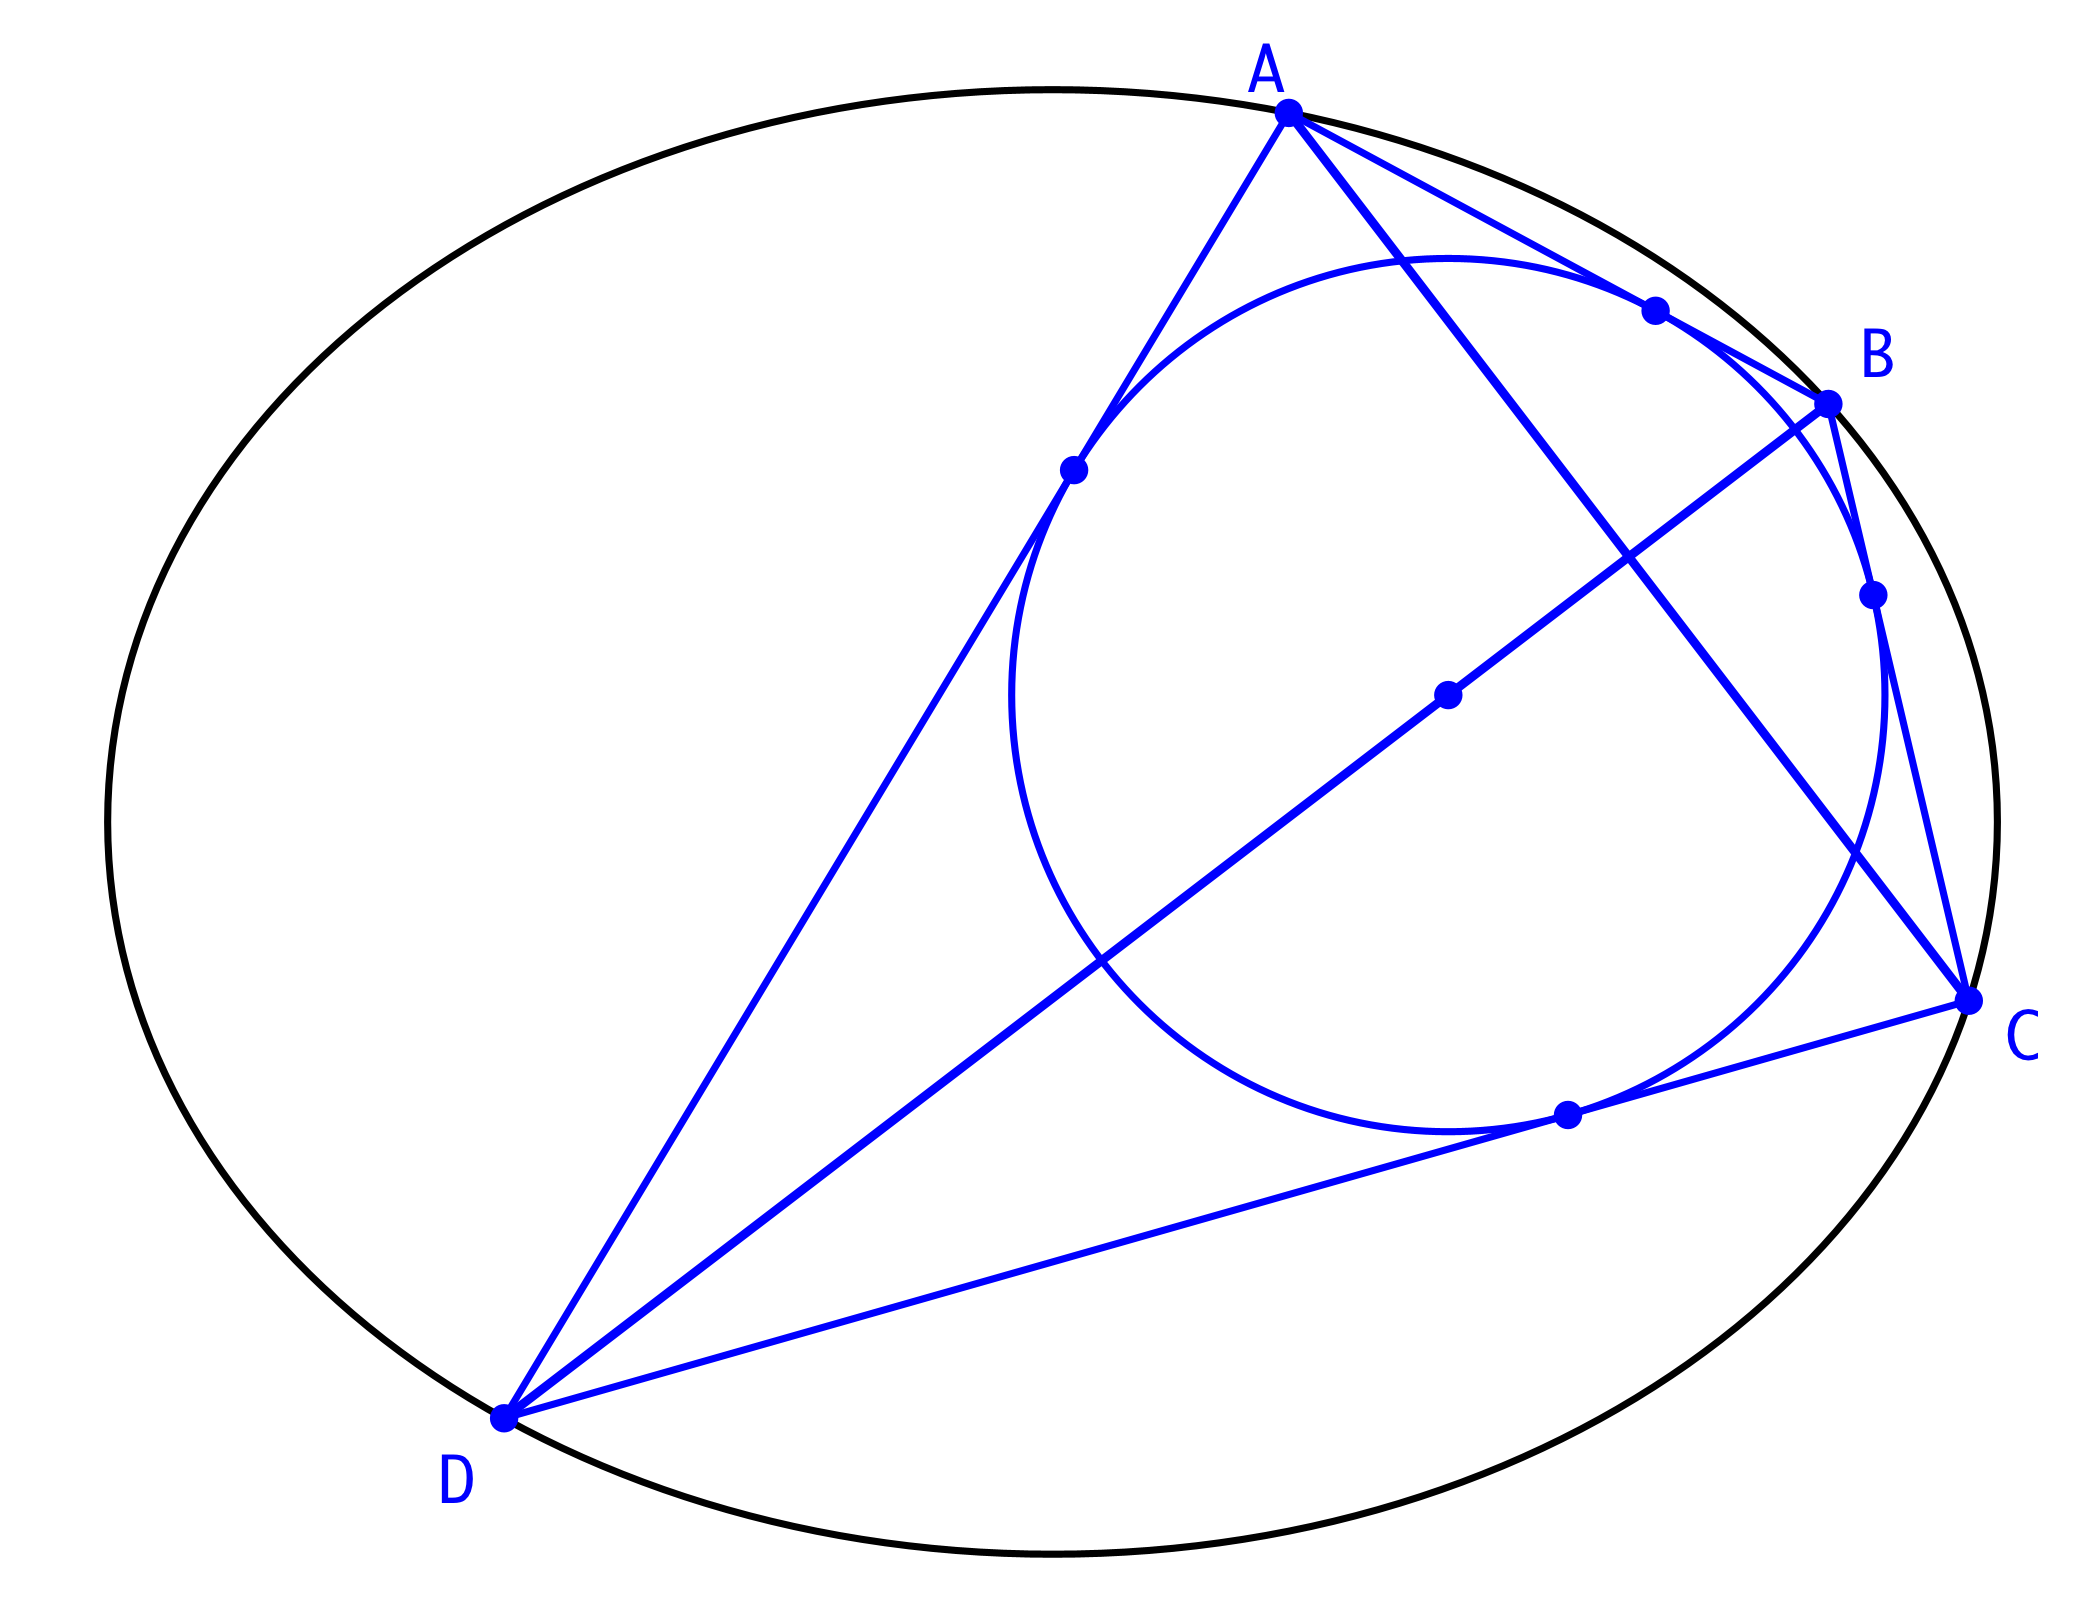 Ein Bild, das Reihe, Dreieck, Astronomie enthält.

Automatisch generierte Beschreibung